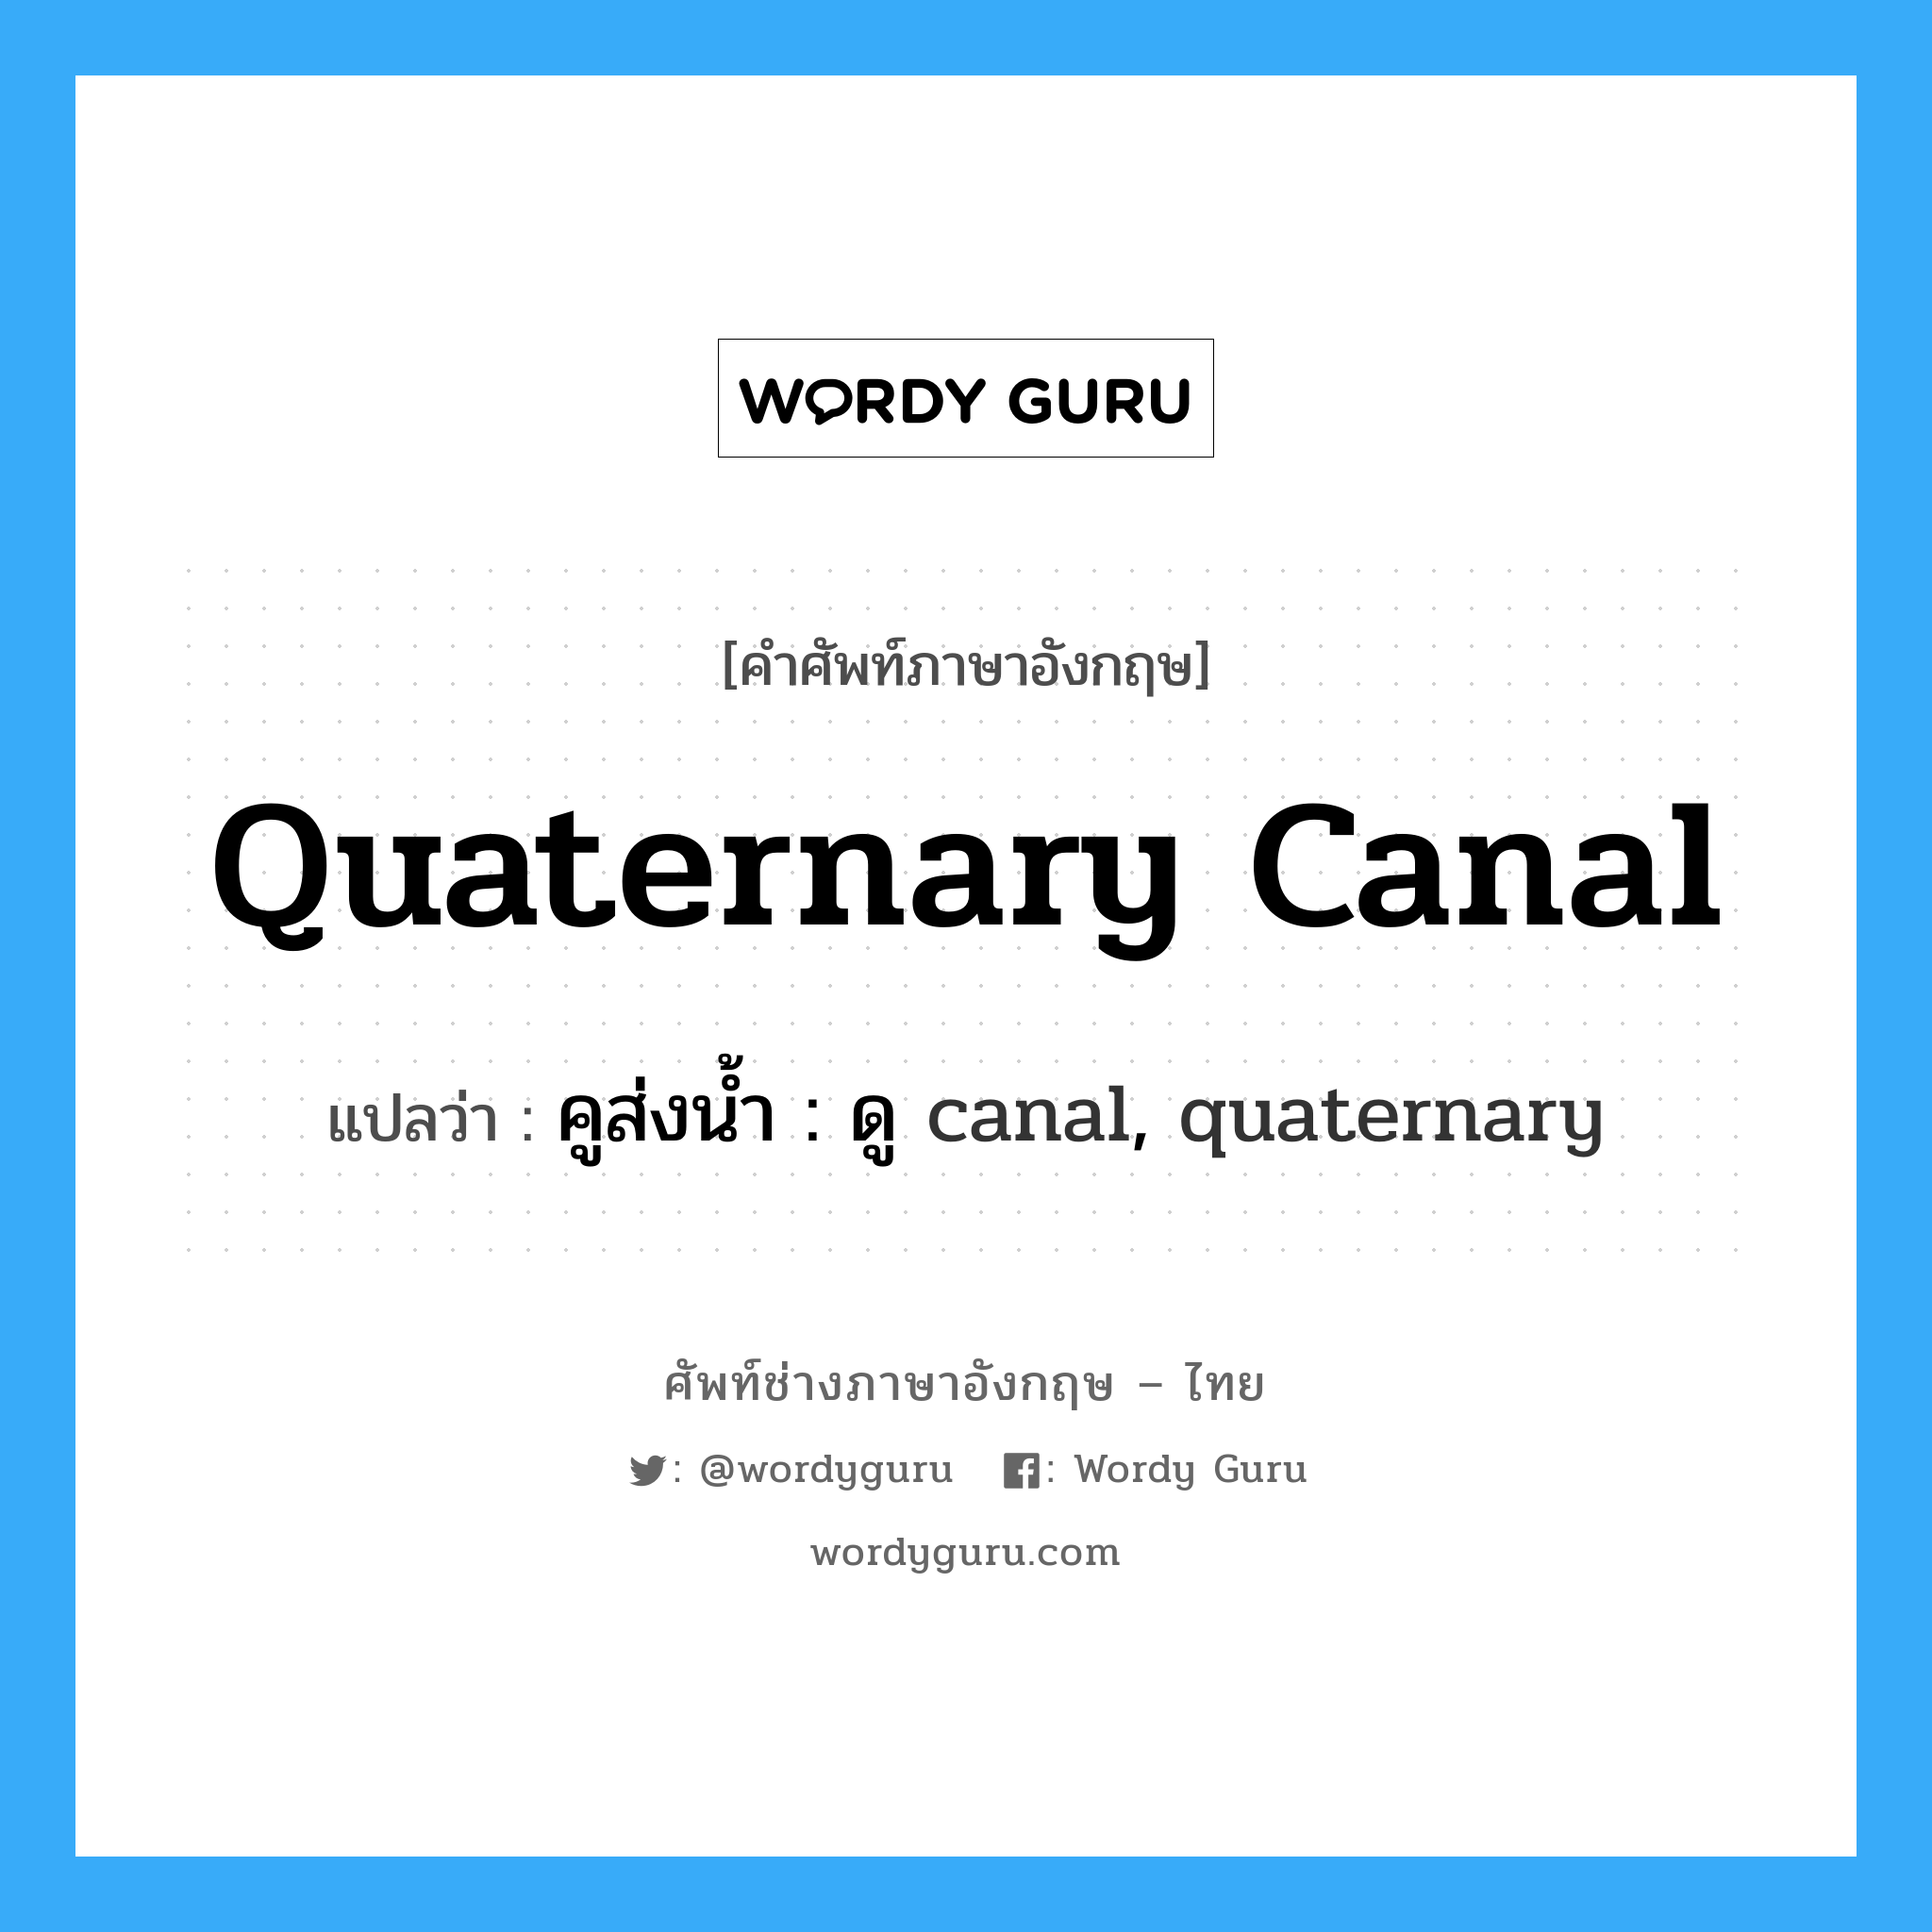 คูส่งน้ำ : ดู canal, quaternary ภาษาอังกฤษ?, คำศัพท์ช่างภาษาอังกฤษ - ไทย คูส่งน้ำ : ดู canal, quaternary คำศัพท์ภาษาอังกฤษ คูส่งน้ำ : ดู canal, quaternary แปลว่า quaternary canal